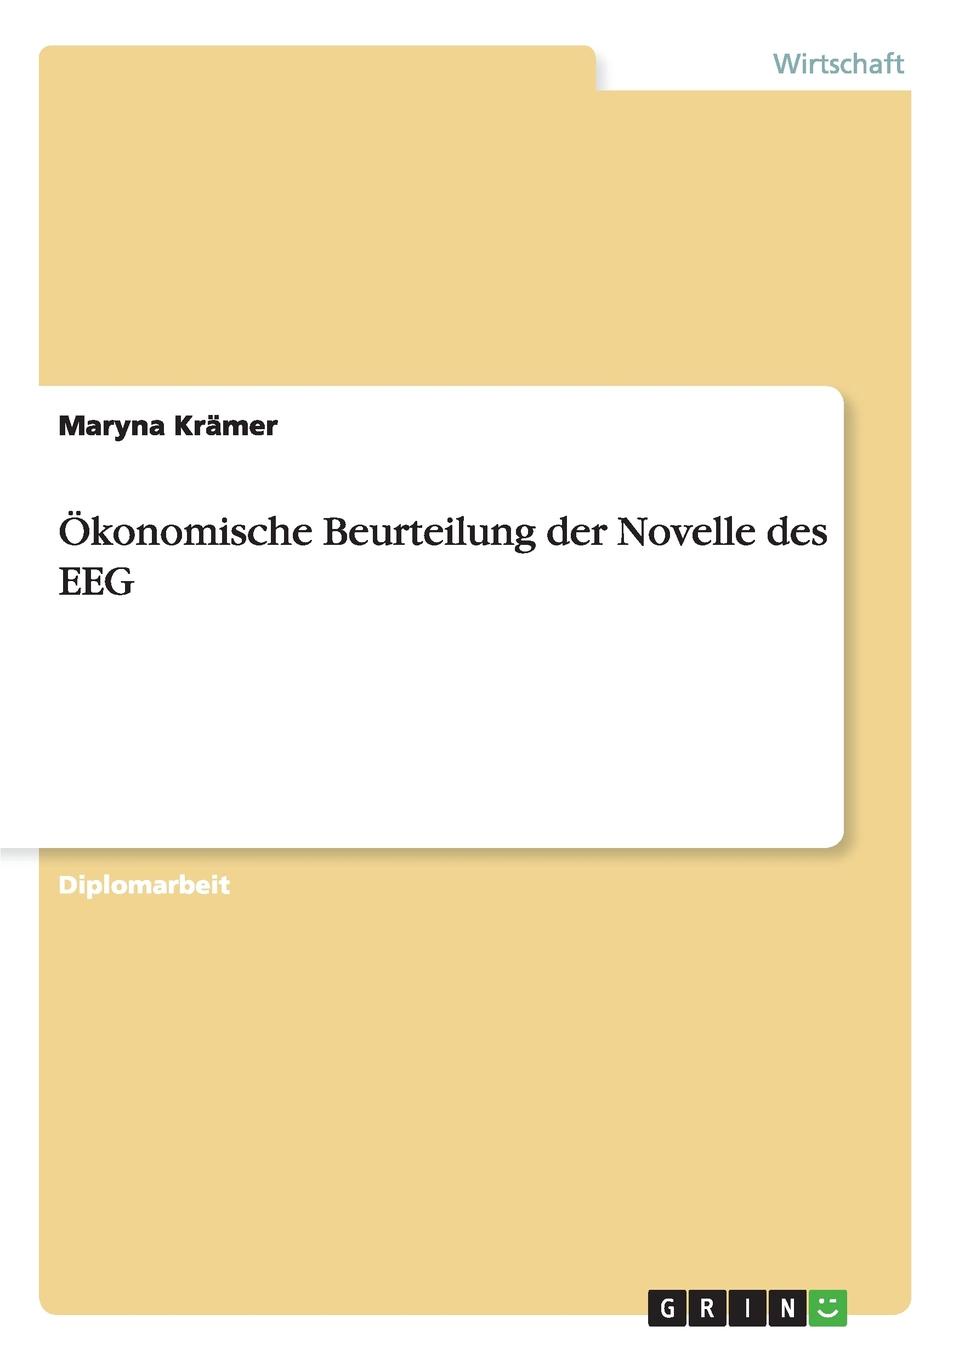 Maryna Krämer Okonomische Beurteilung der Novelle des EEG